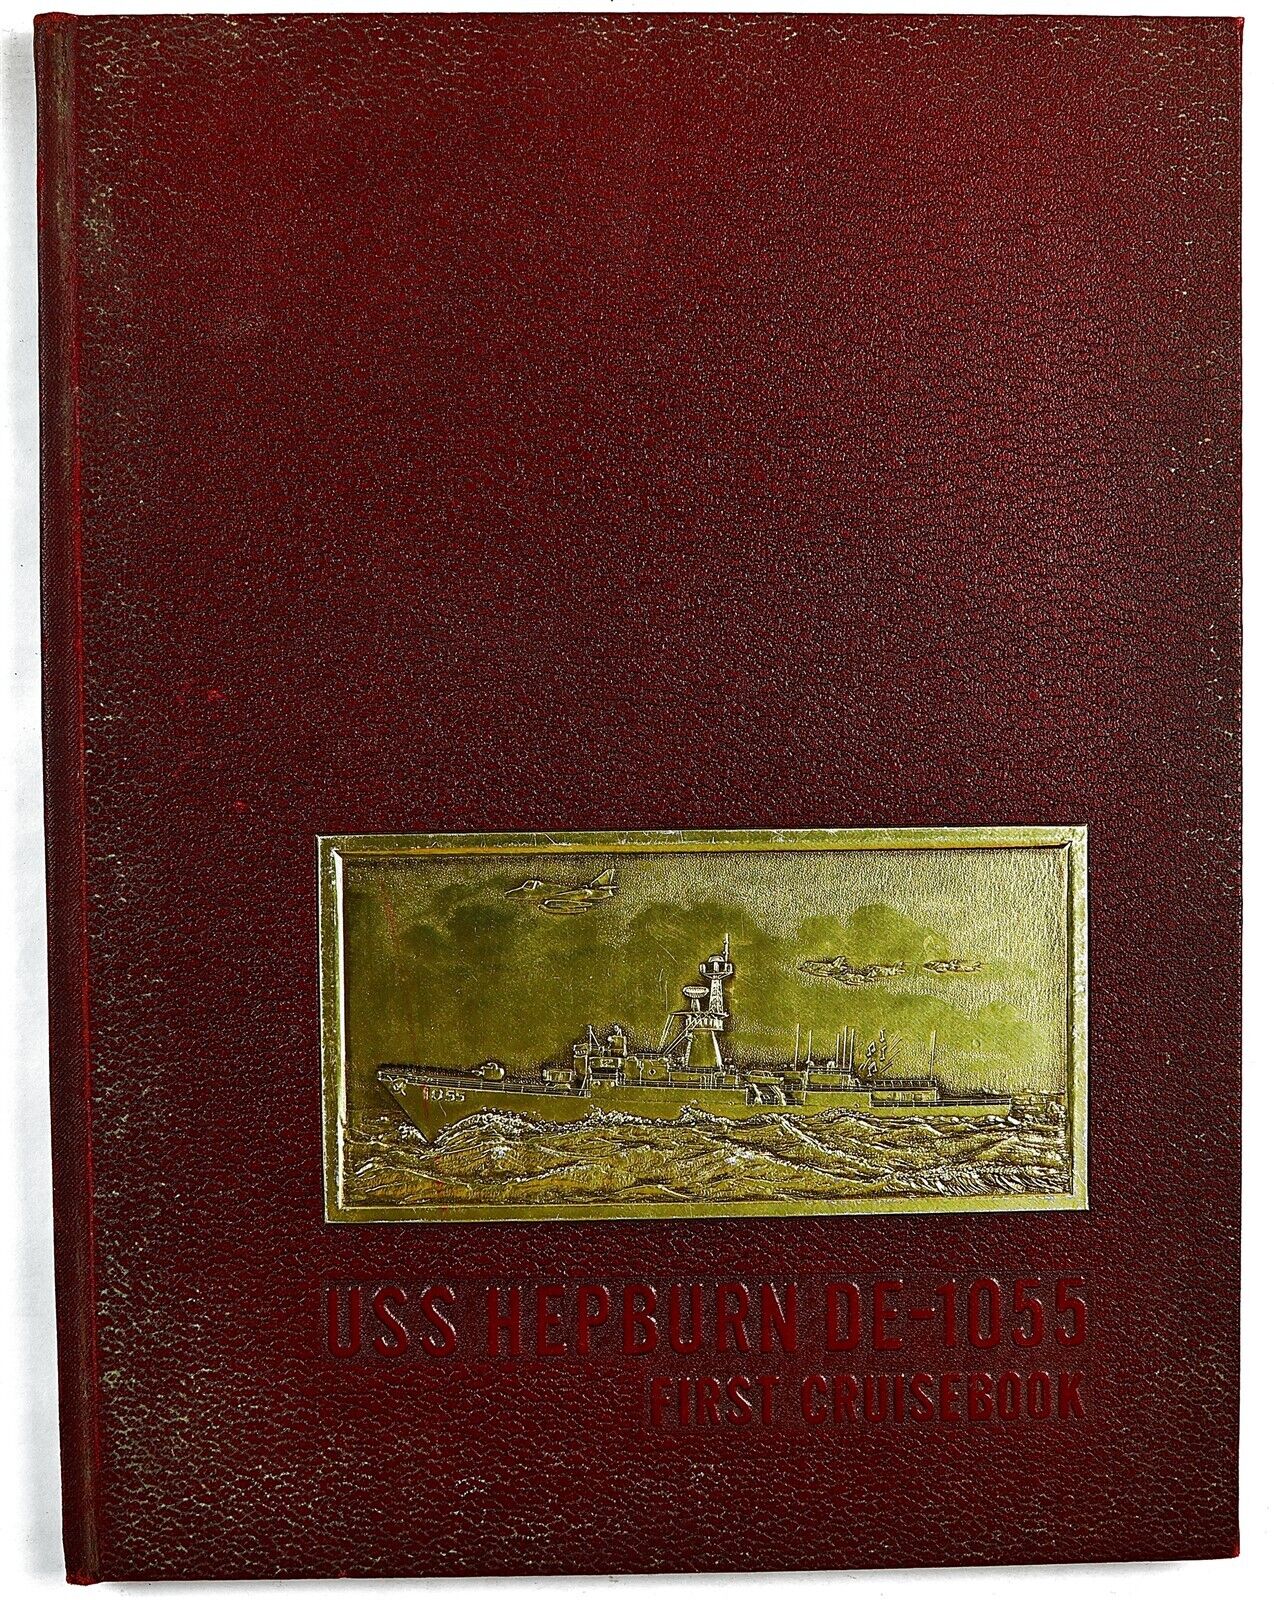 USS Hepburn (DE-1055) 1971 Westpac Deployment Cruise Book